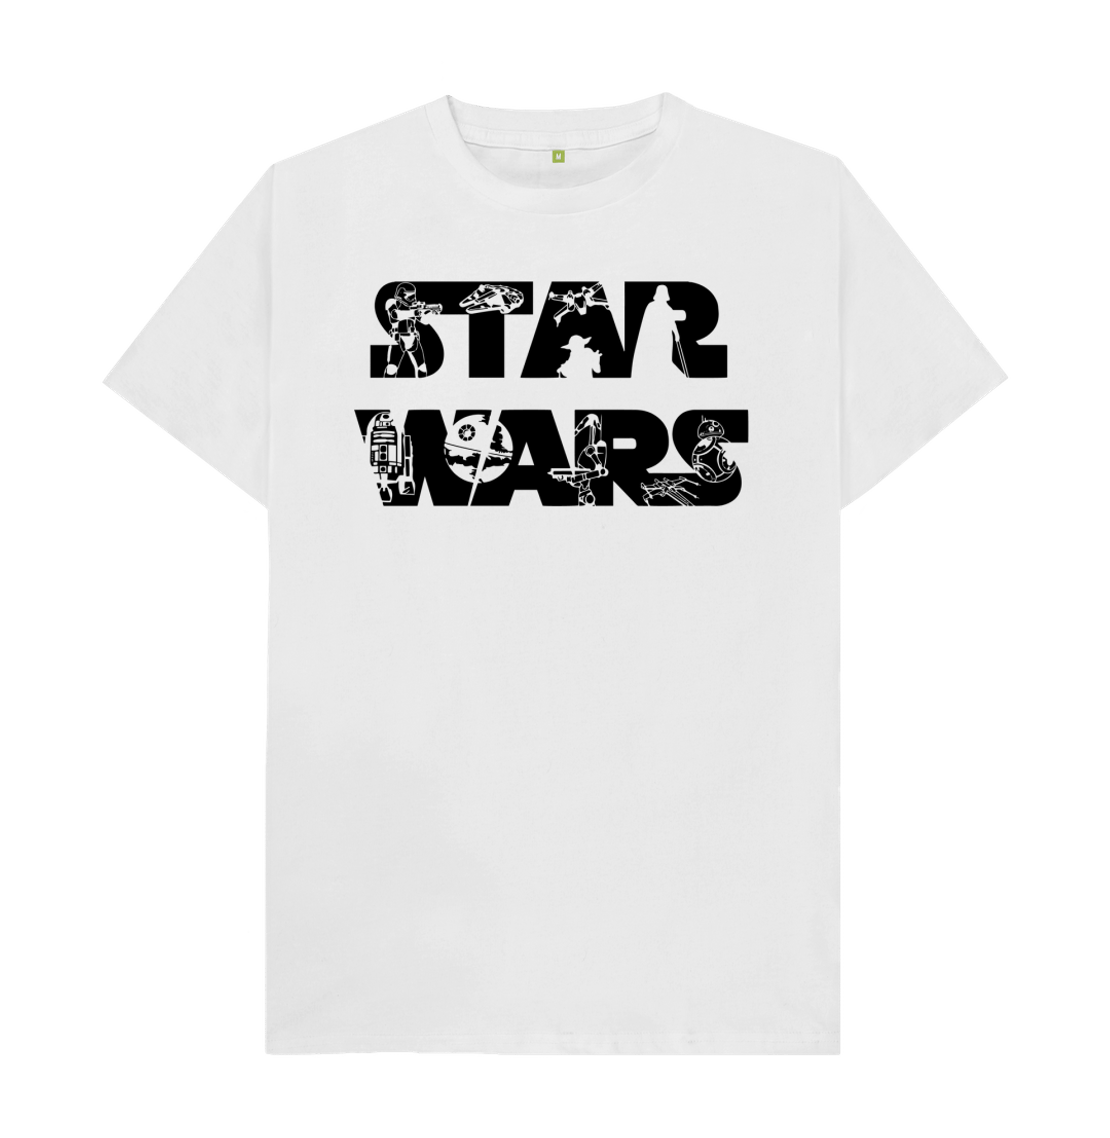 Star Hoodies Wars and Masihandmasih Apparel Shop - Contemporary at Modern T-Shirts and